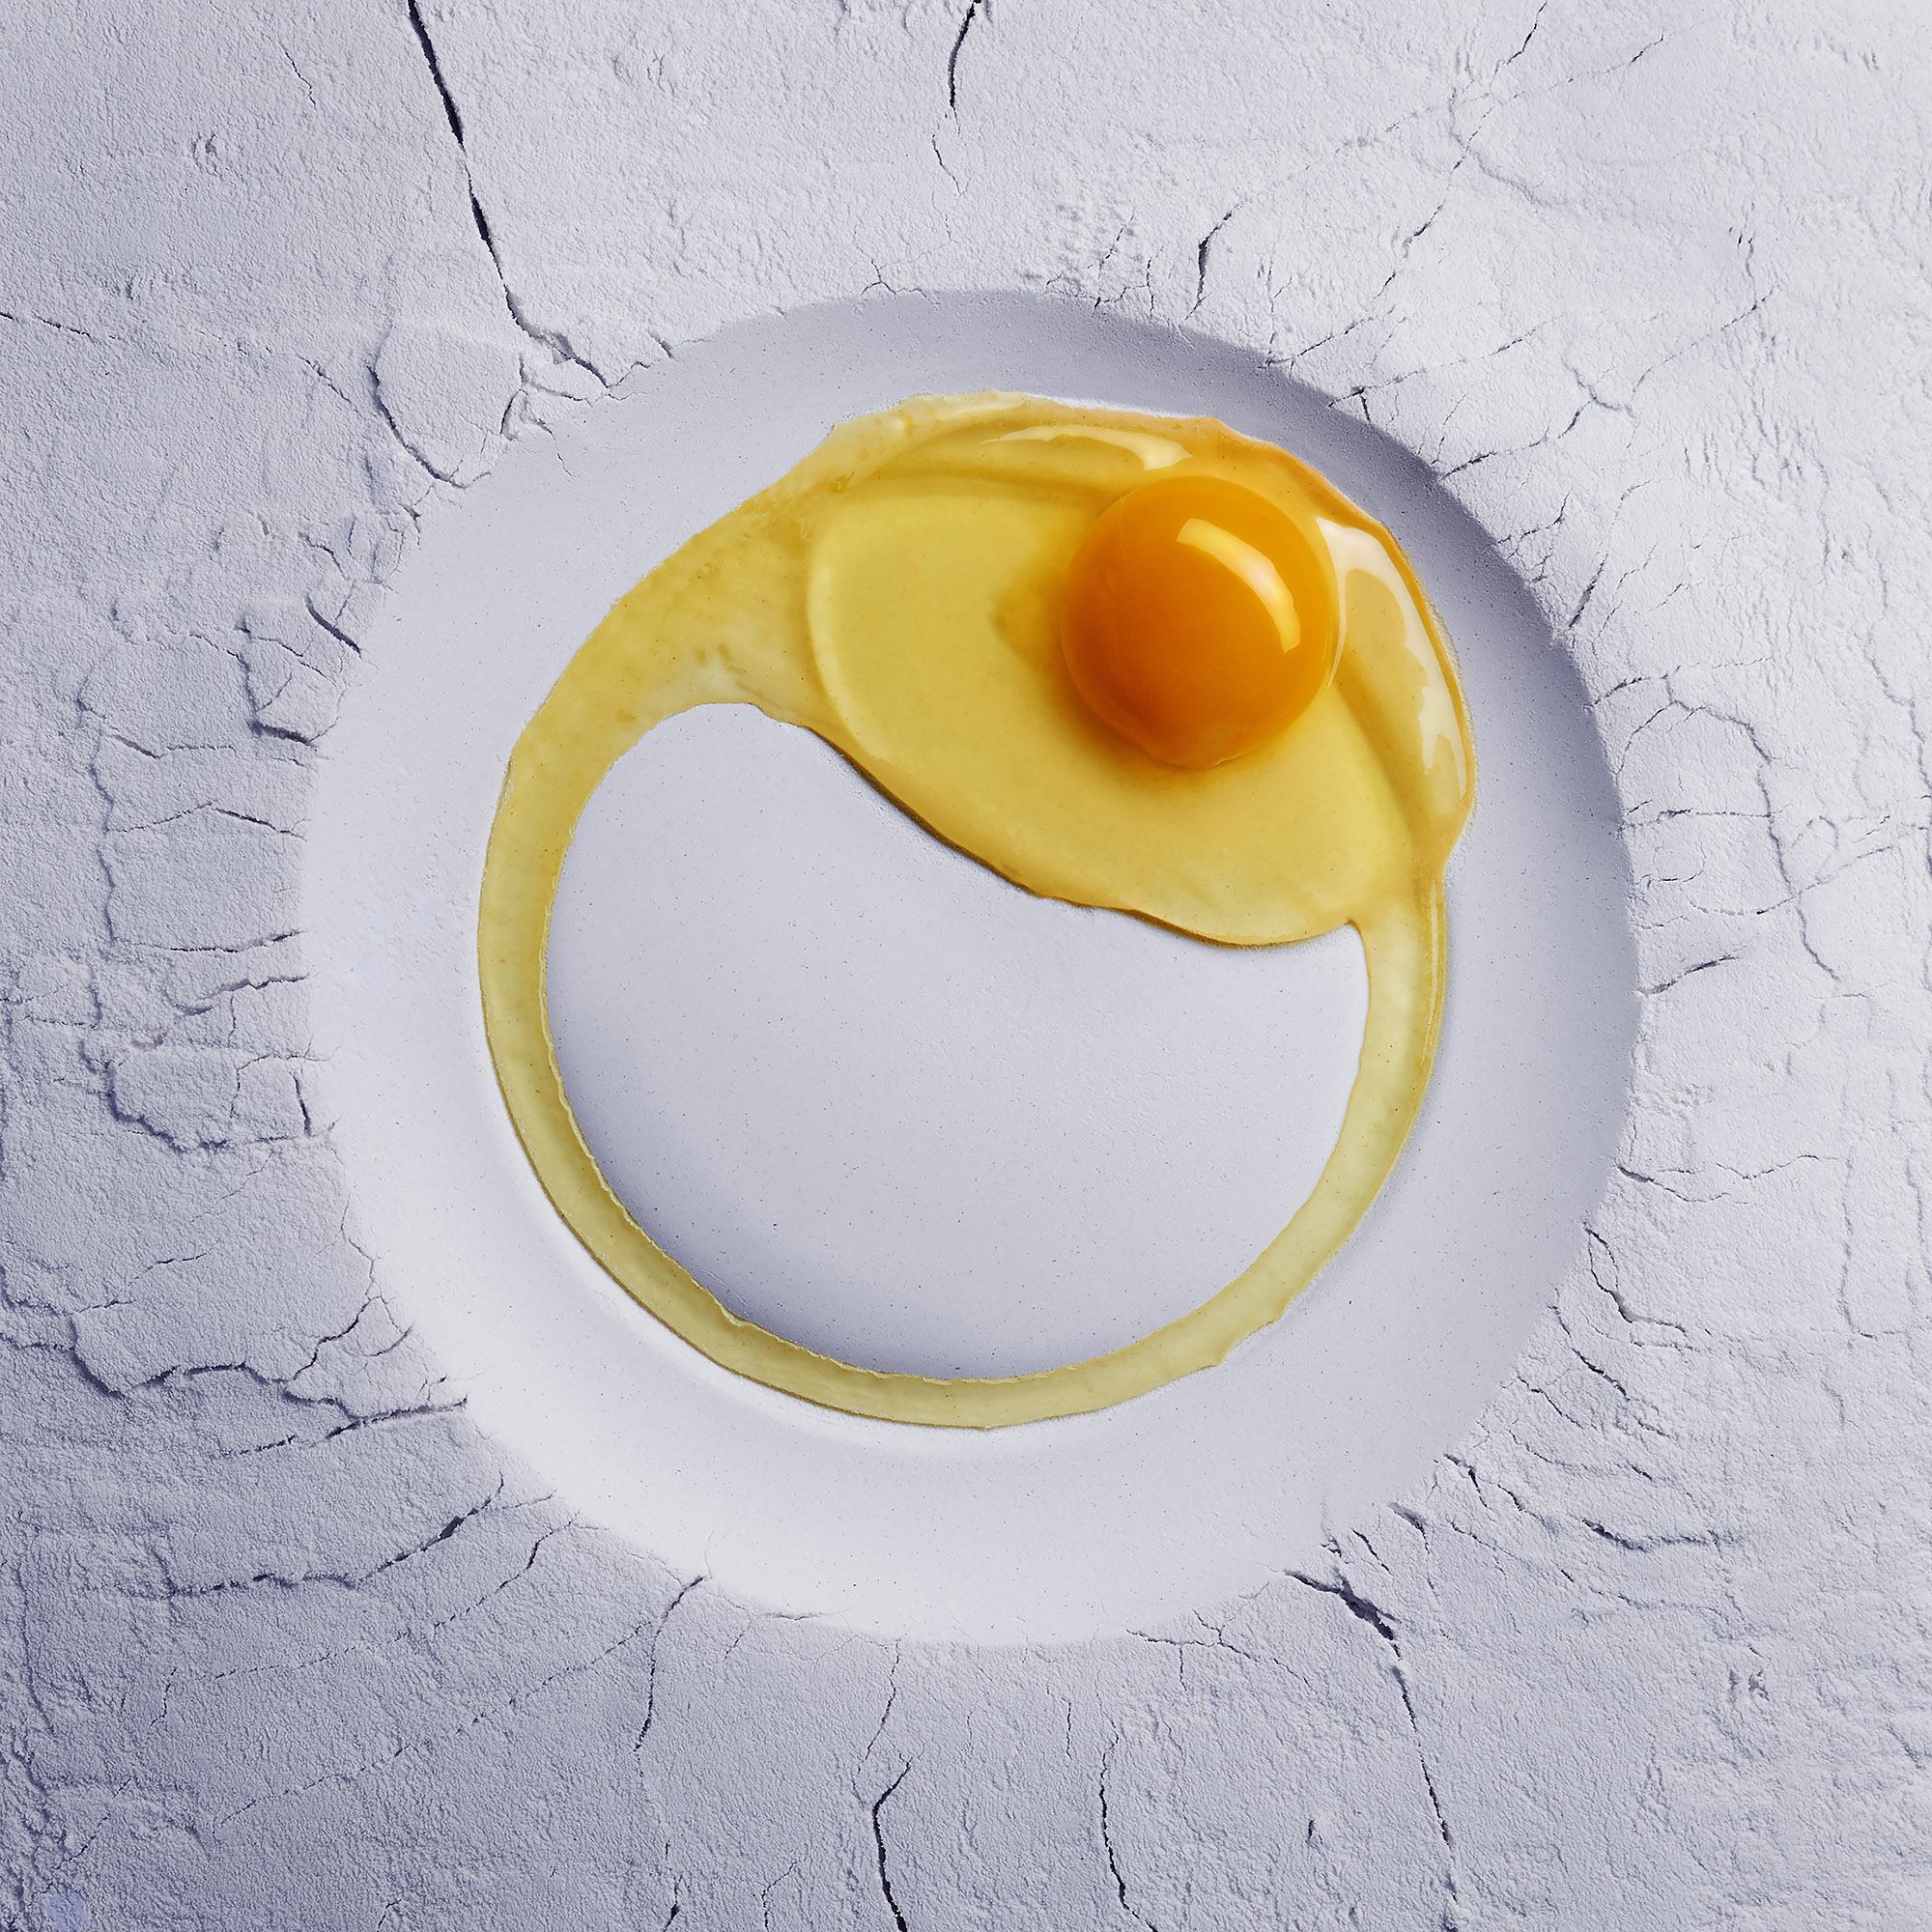 Ian Knaggs Commercial Still Life Photographer - Flour and Egg Plate